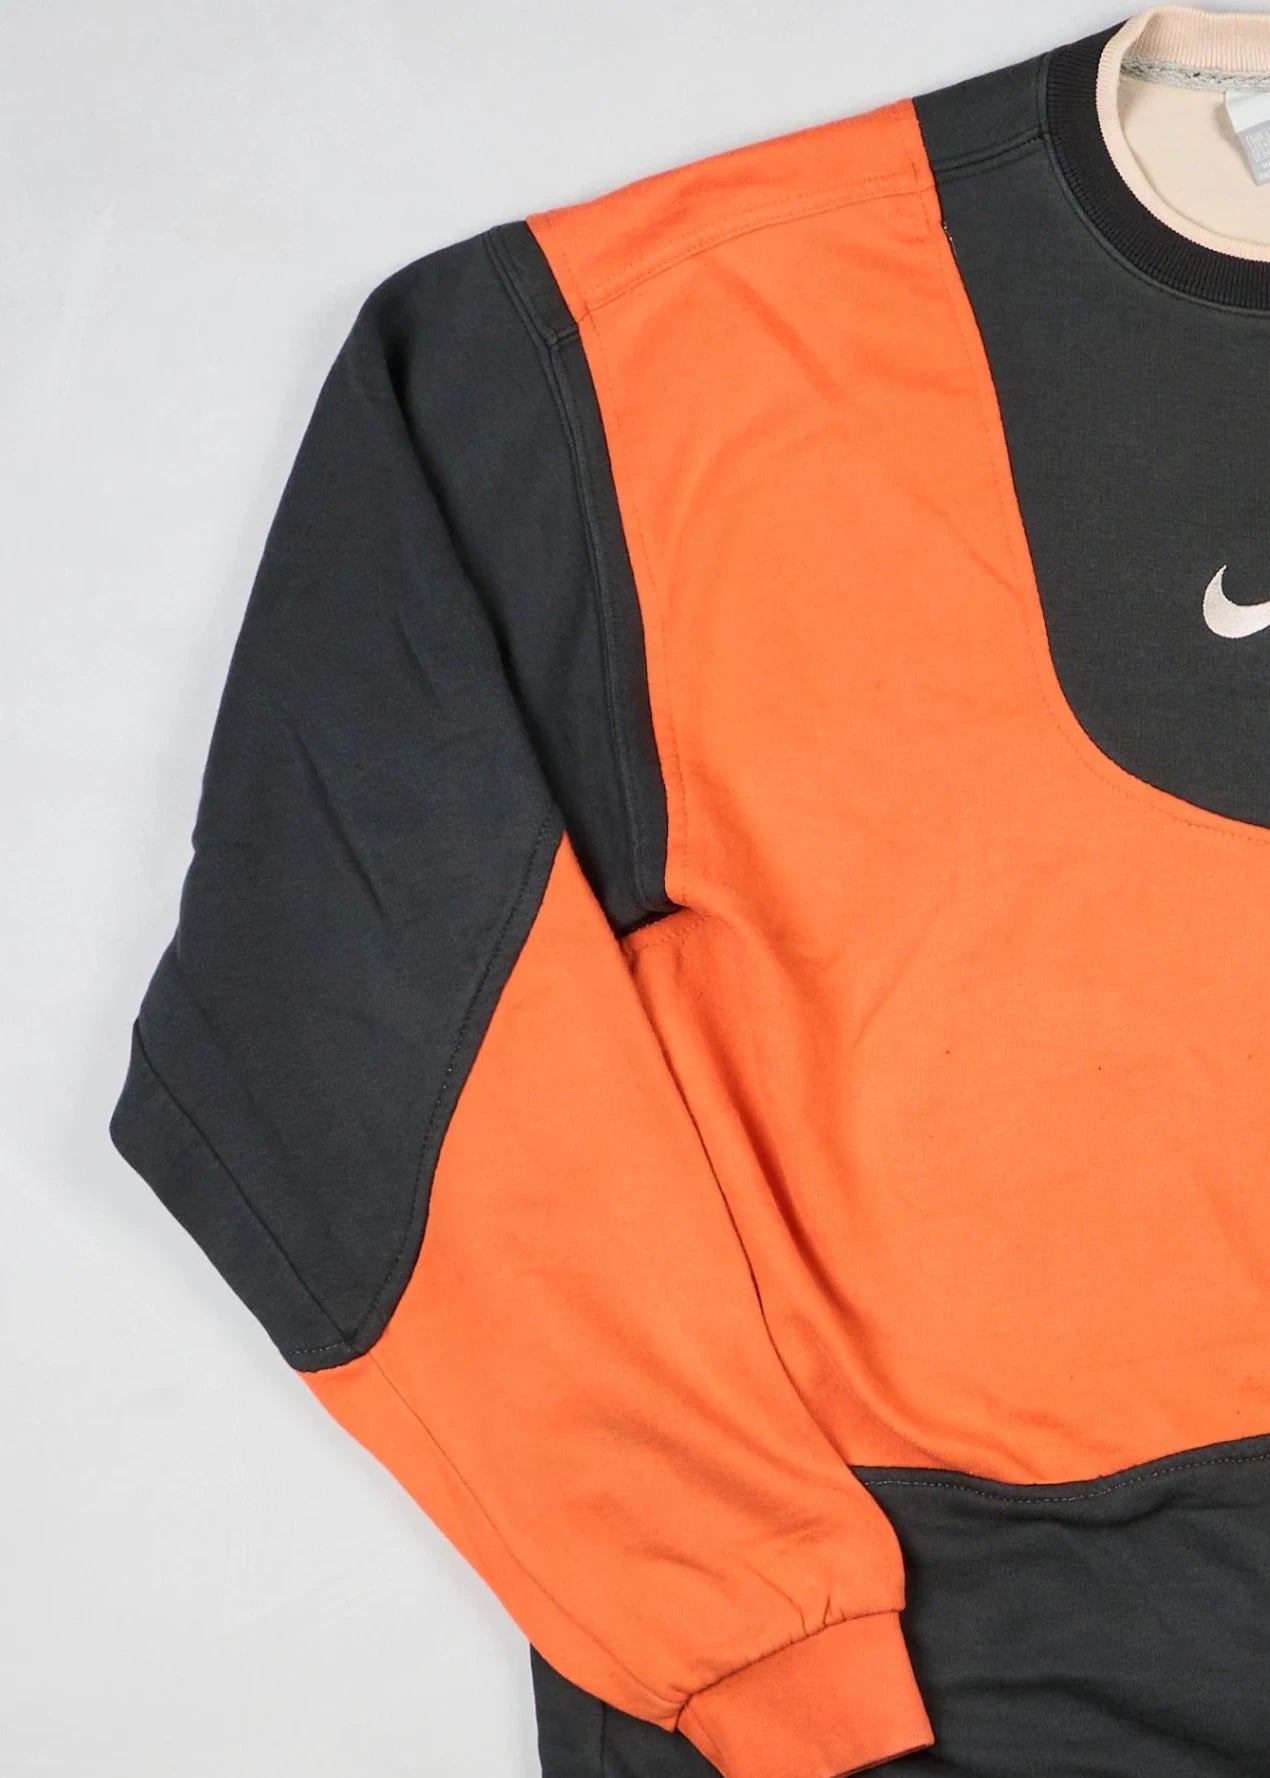 Nike - Sweatshirt (XL) Left